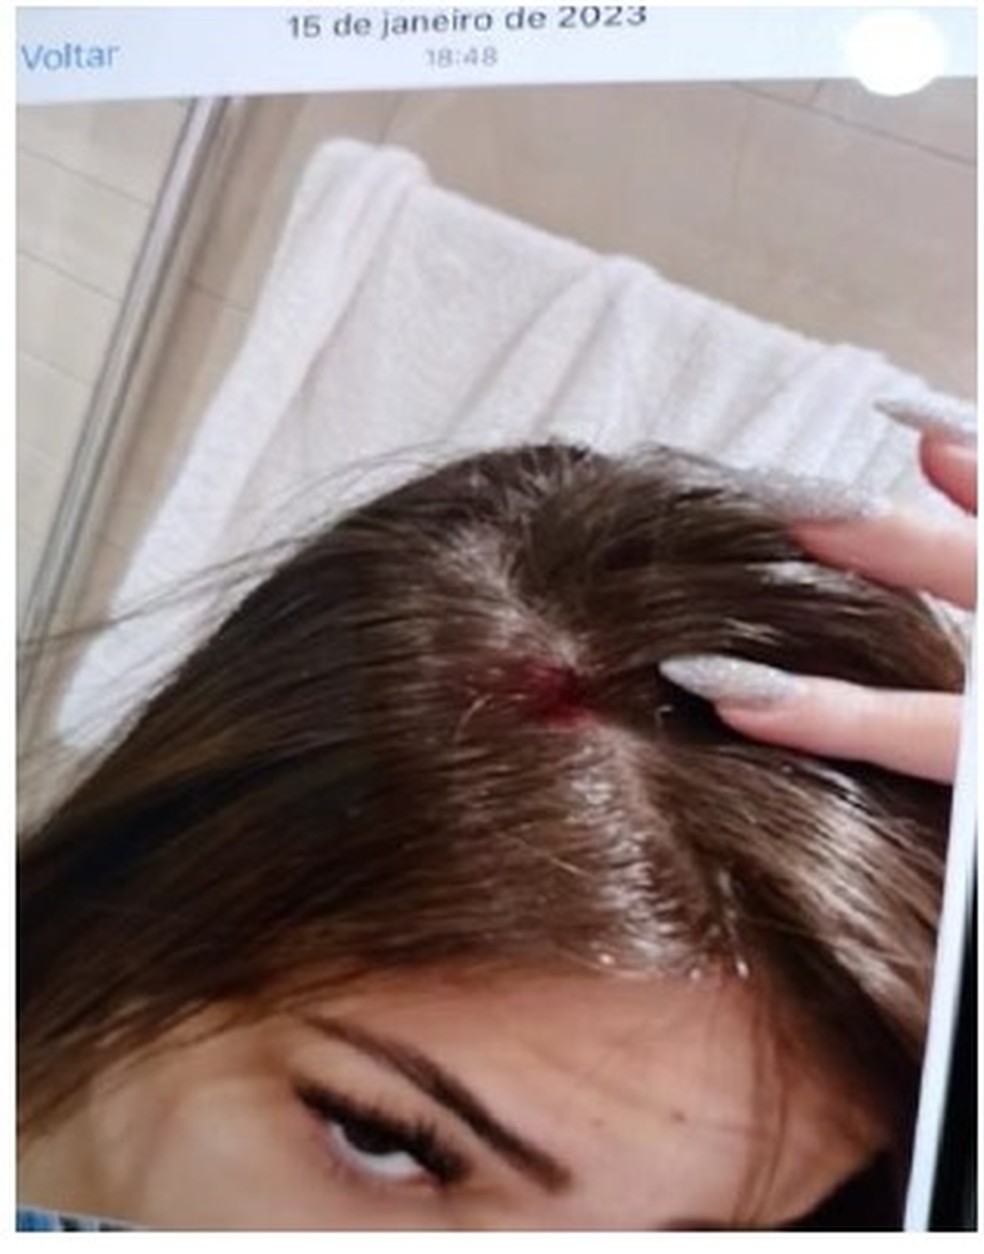 Gabriela Cavallin com ferimento na cabeça — Foto: Reprodução